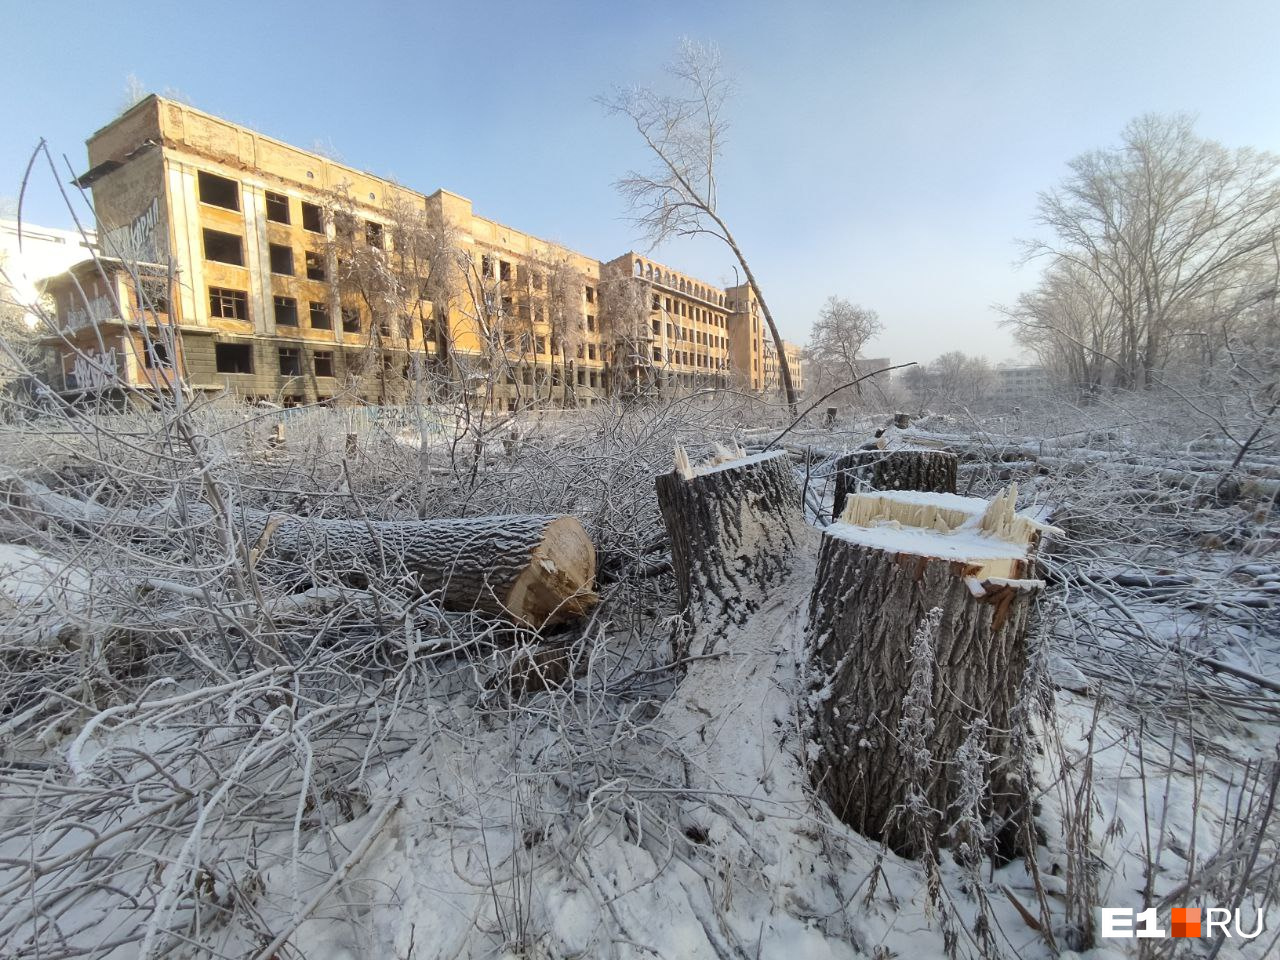 Остались ветки да пеньки: вокруг здания заброшенной больницы в Зеленой Роще вырубили все деревья